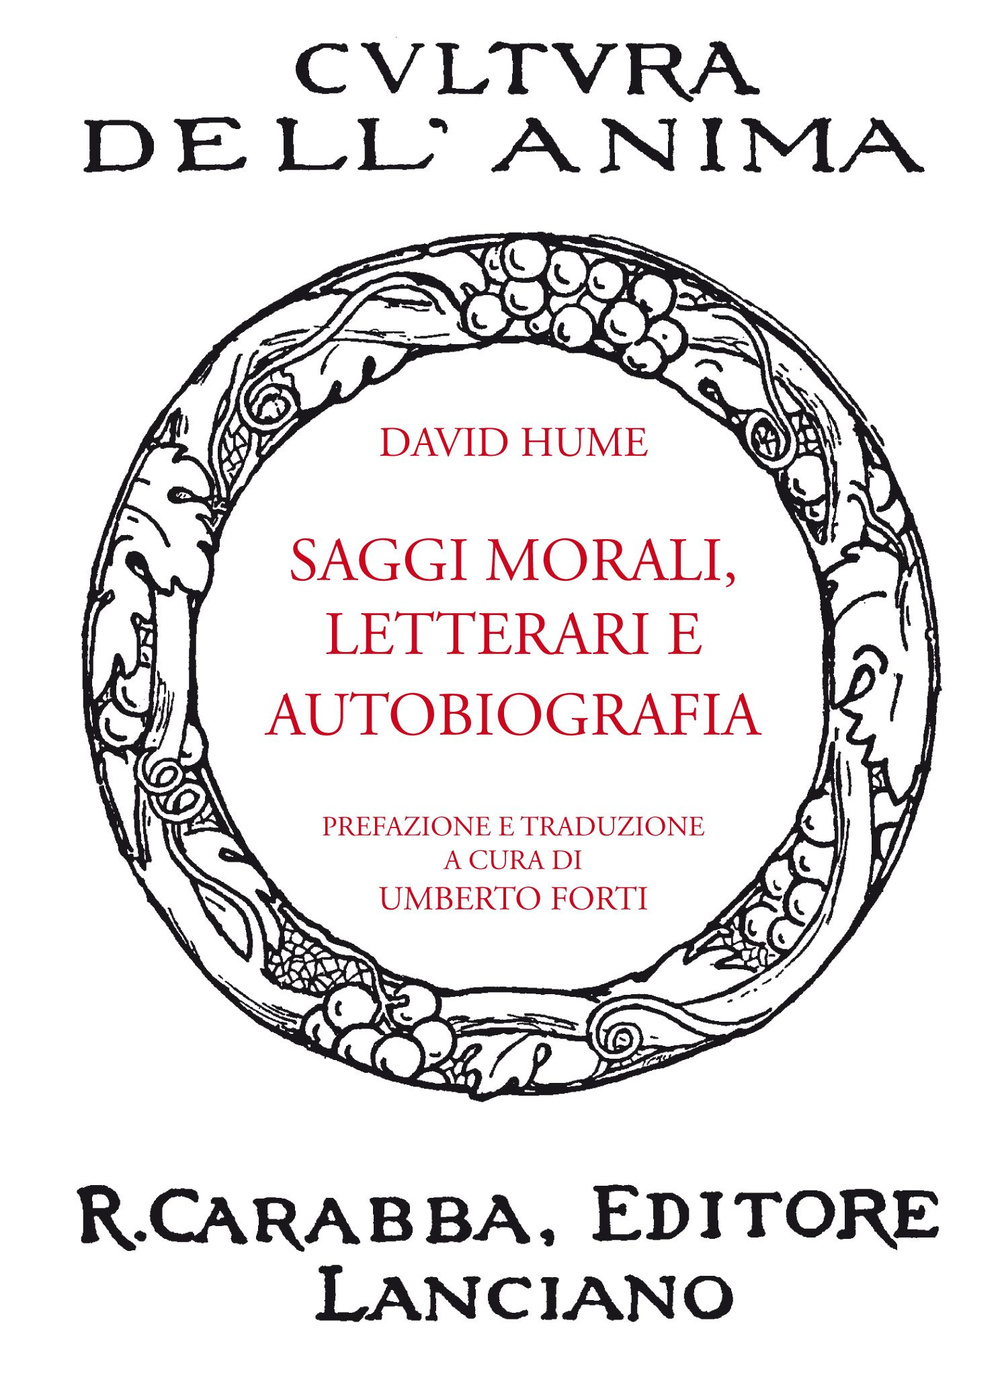 Libri David Hume - Saggi Morali, Letterari E Autobiografia NUOVO SIGILLATO, EDIZIONE DEL 01/01/2014 SUBITO DISPONIBILE